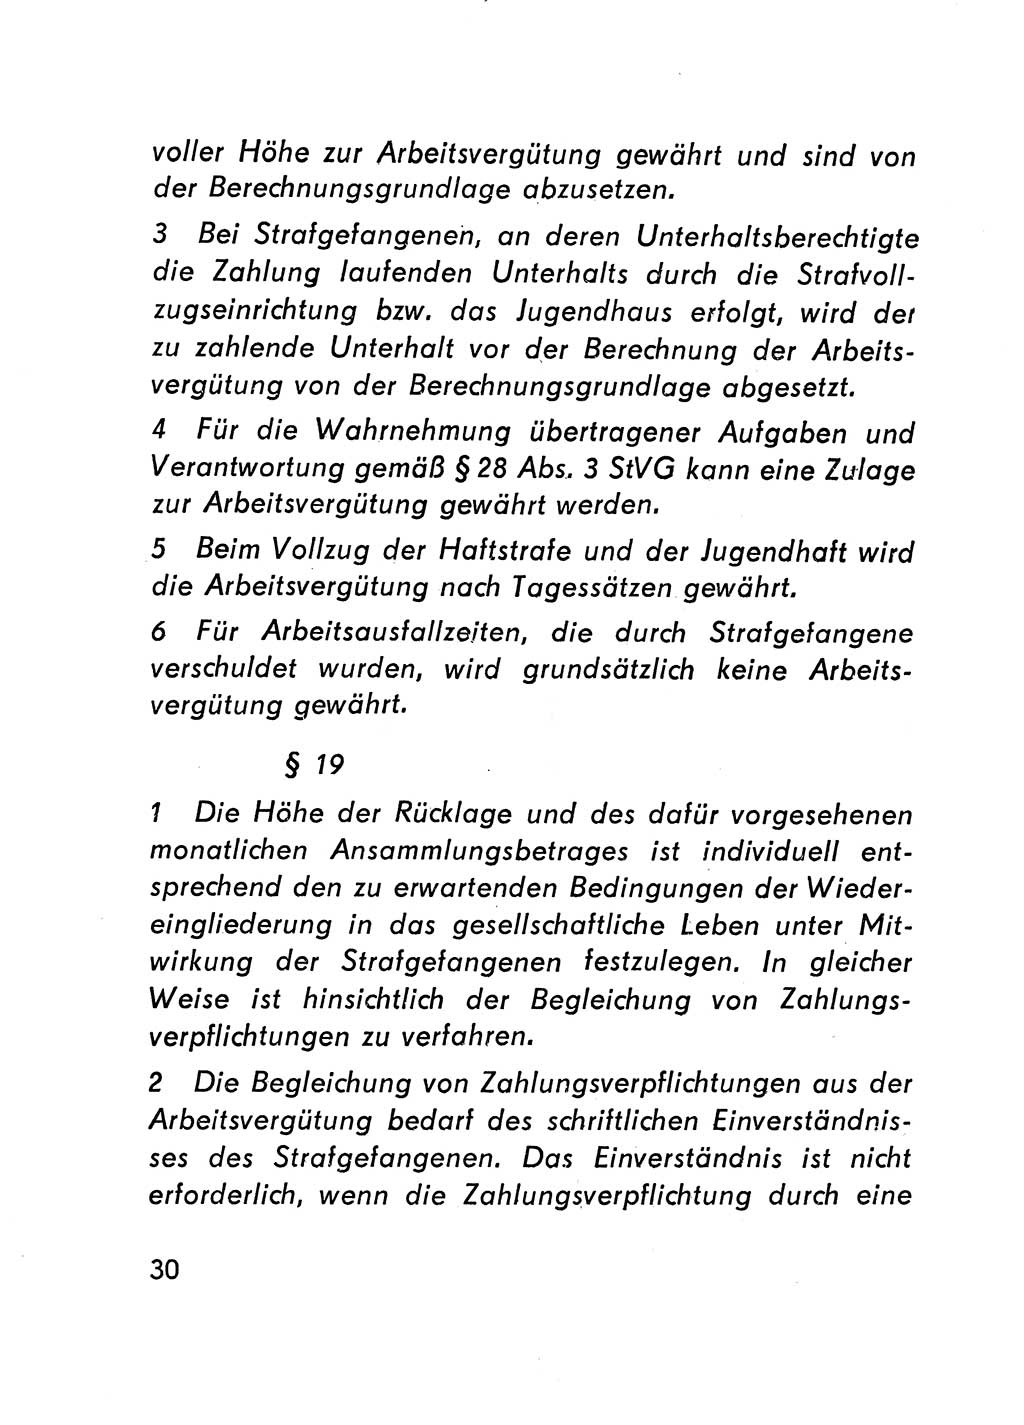 Gesetz über den Vollzug der Strafen mit Freiheitsentzug (Strafvollzugsgesetz) - StVG - [Deutsche Demokratische Republik (DDR)] 1977, Seite 30 (StVG DDR 1977, S. 30)